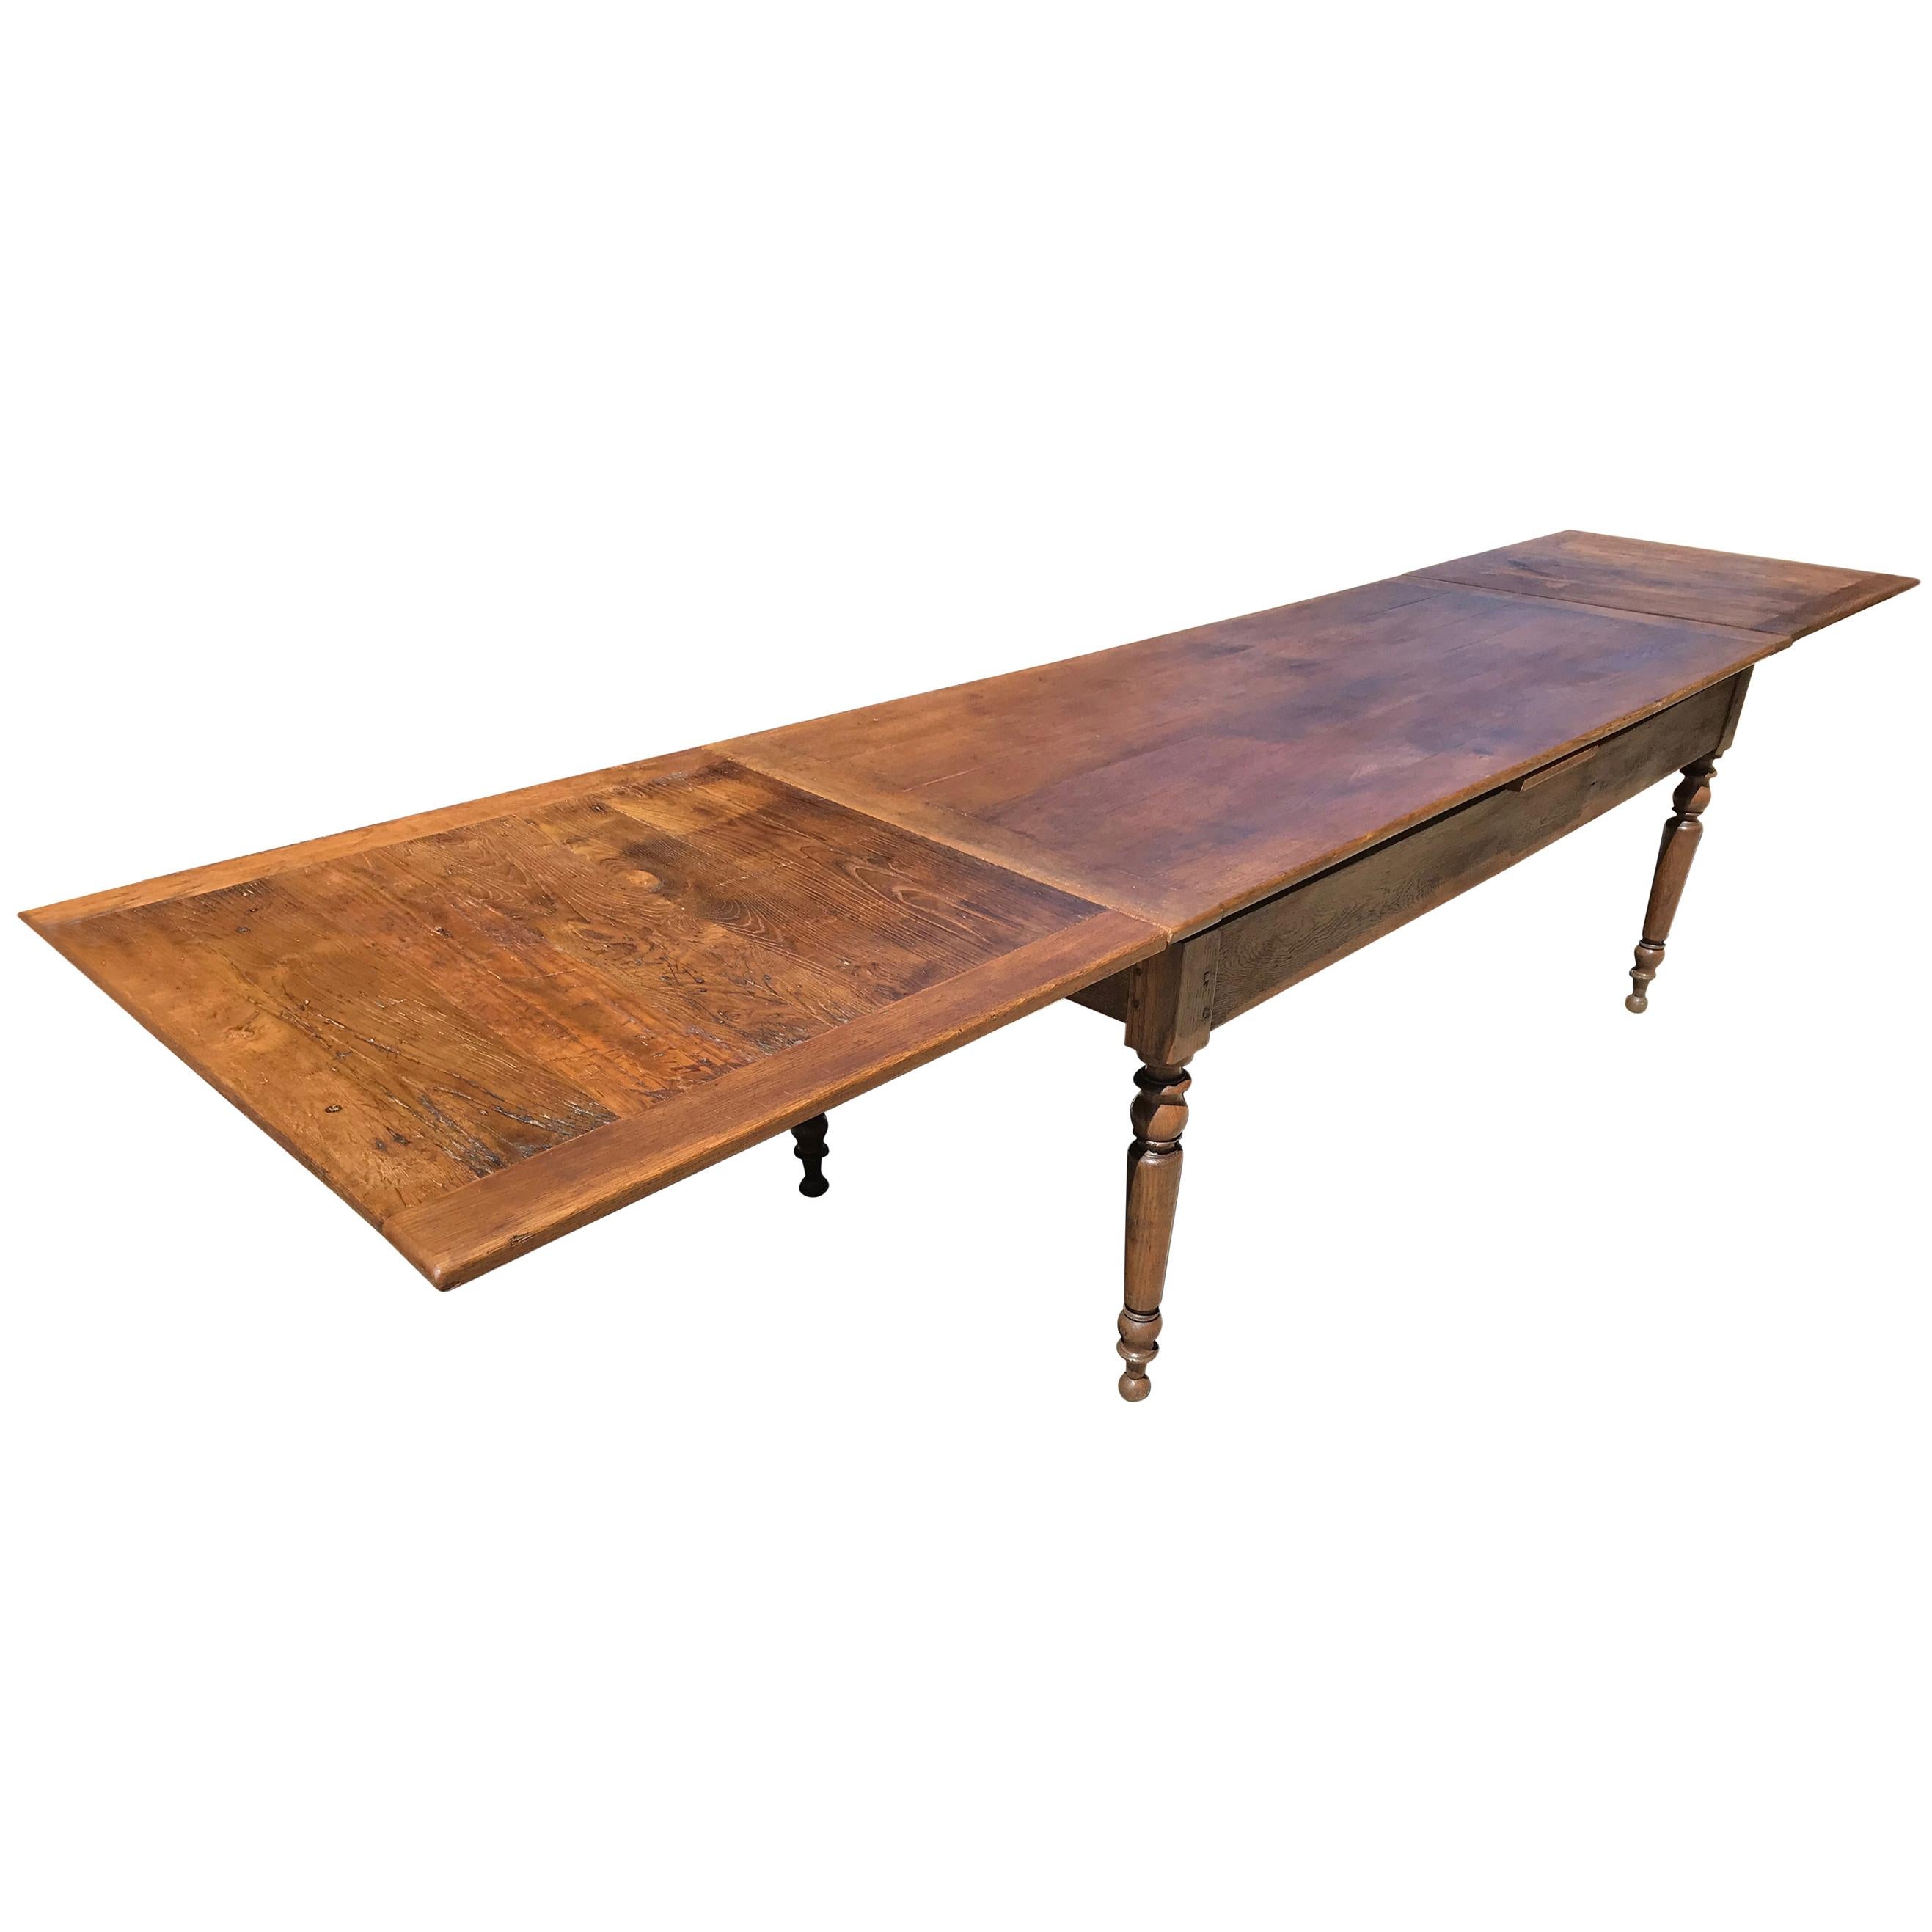 Antique Oak Double Extending Table